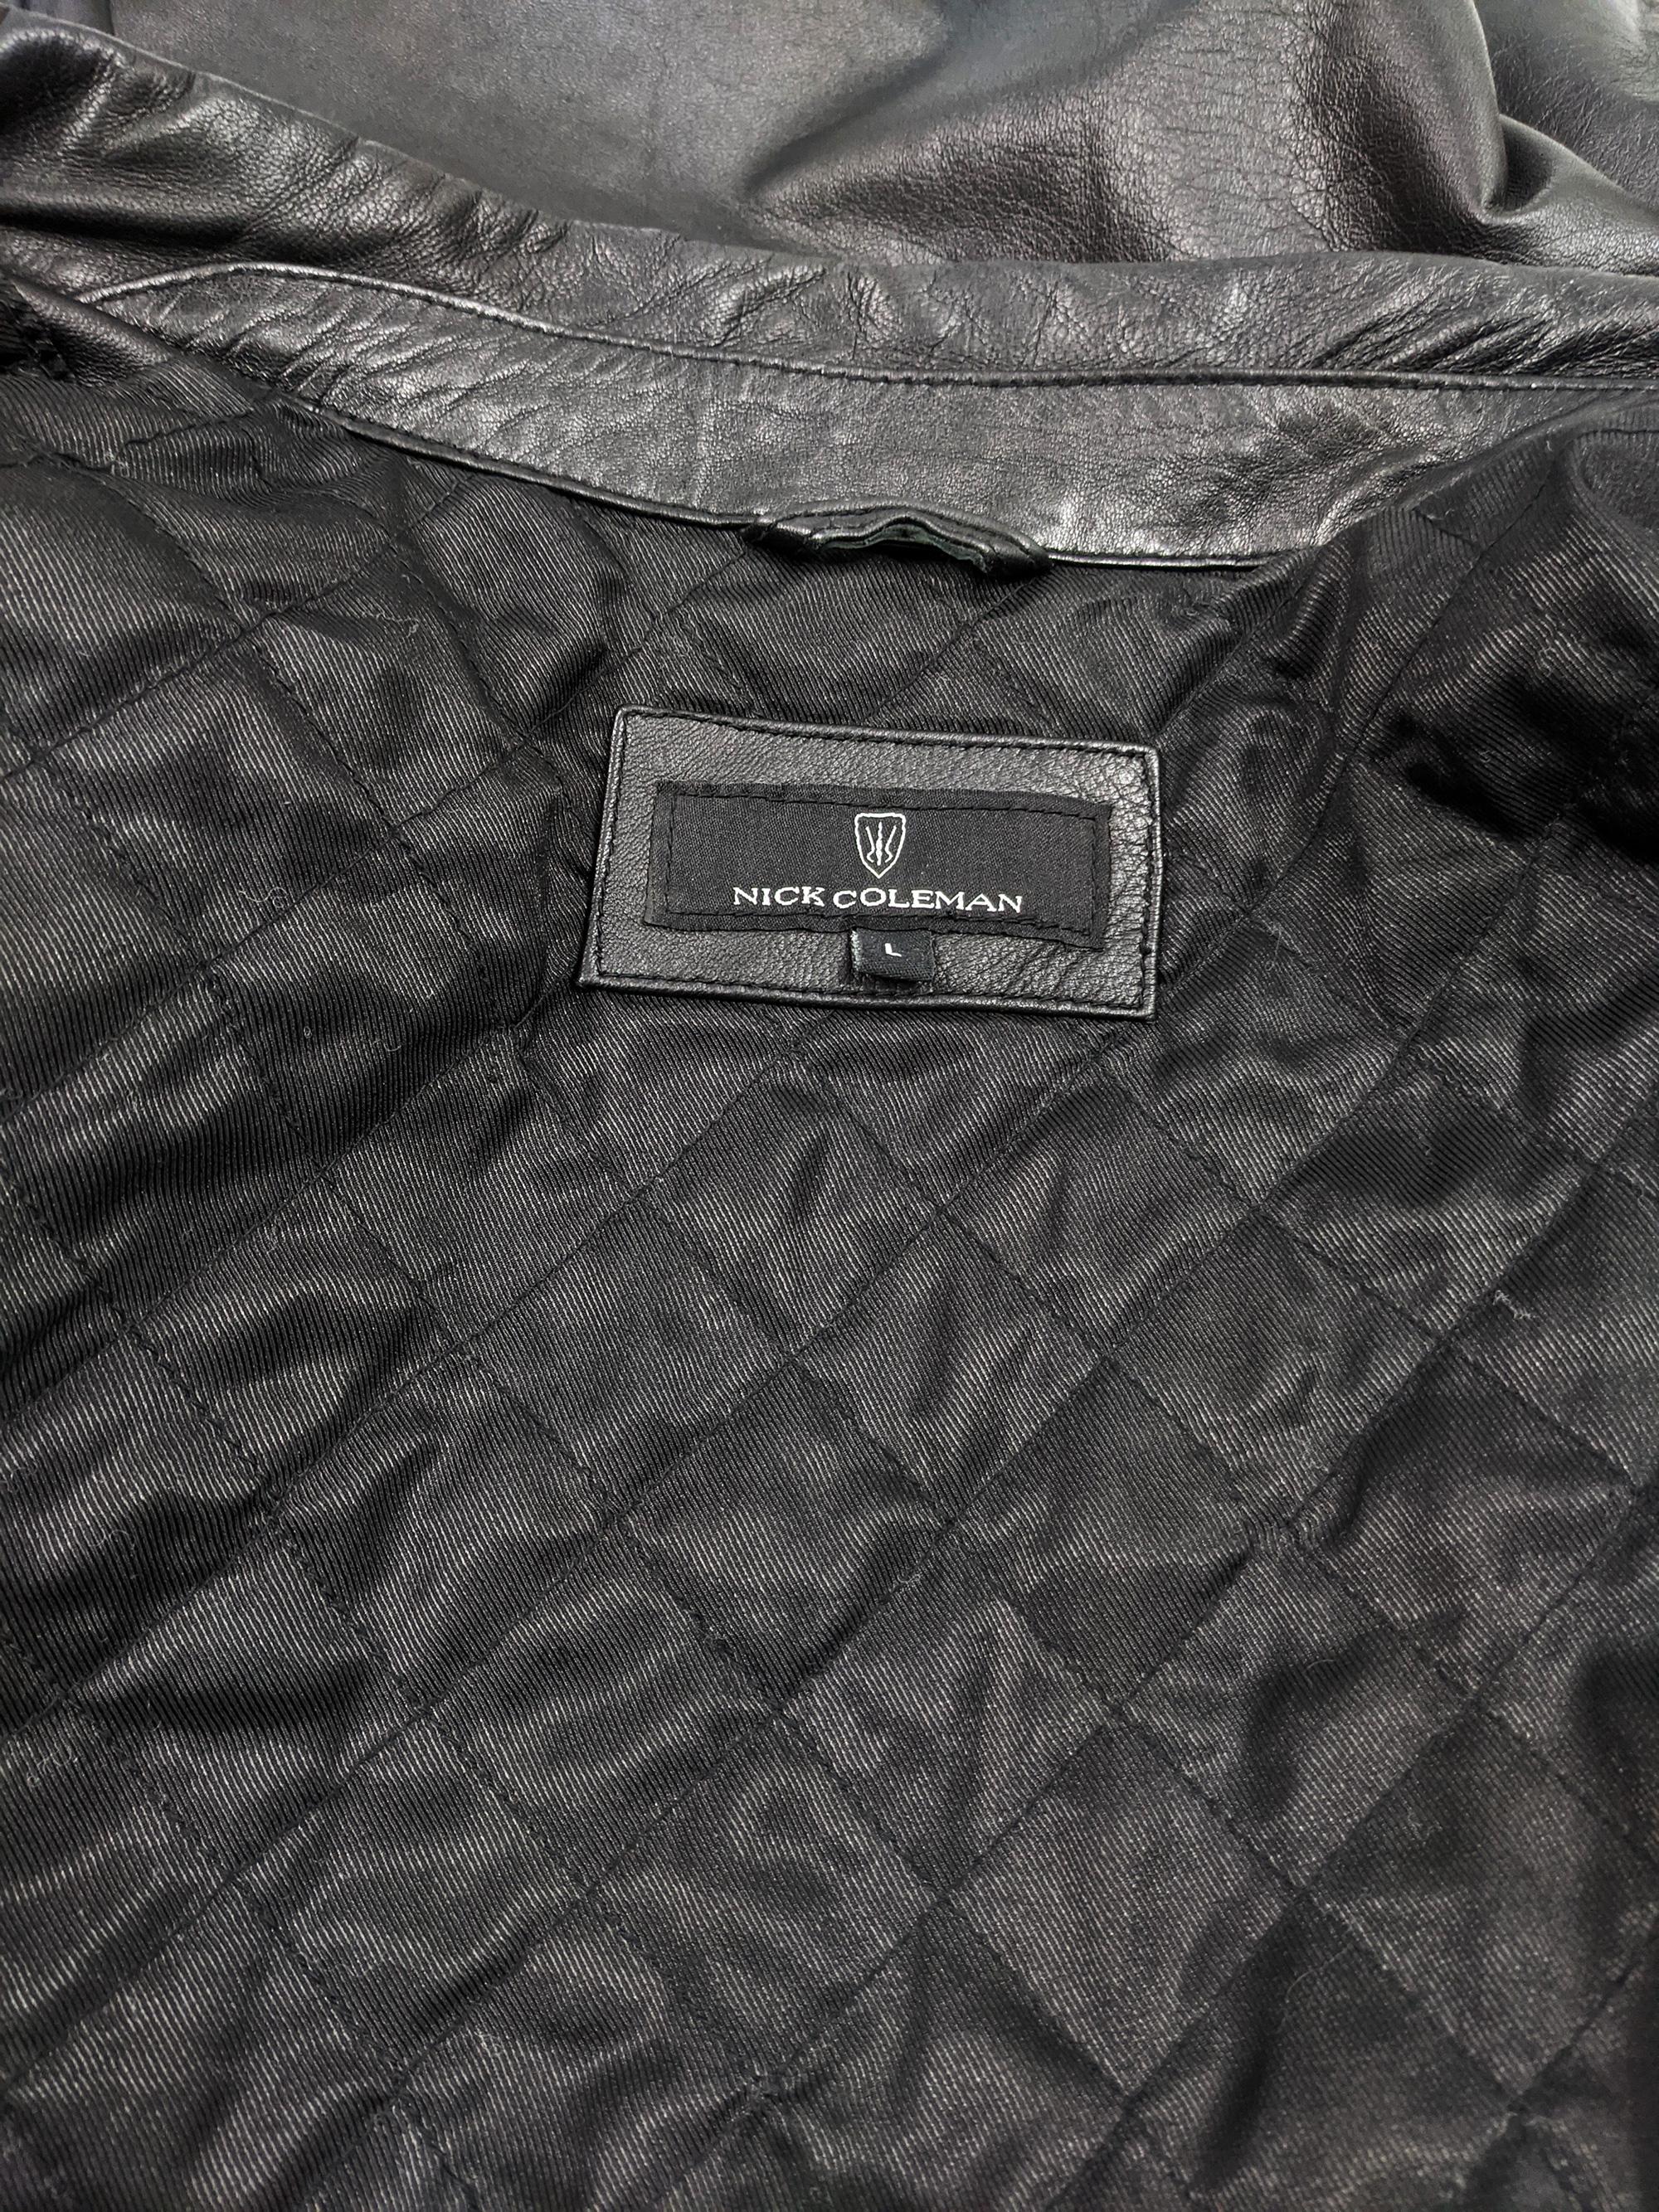 Nick Coleman Mens Vintage Black Leather Jacket 1